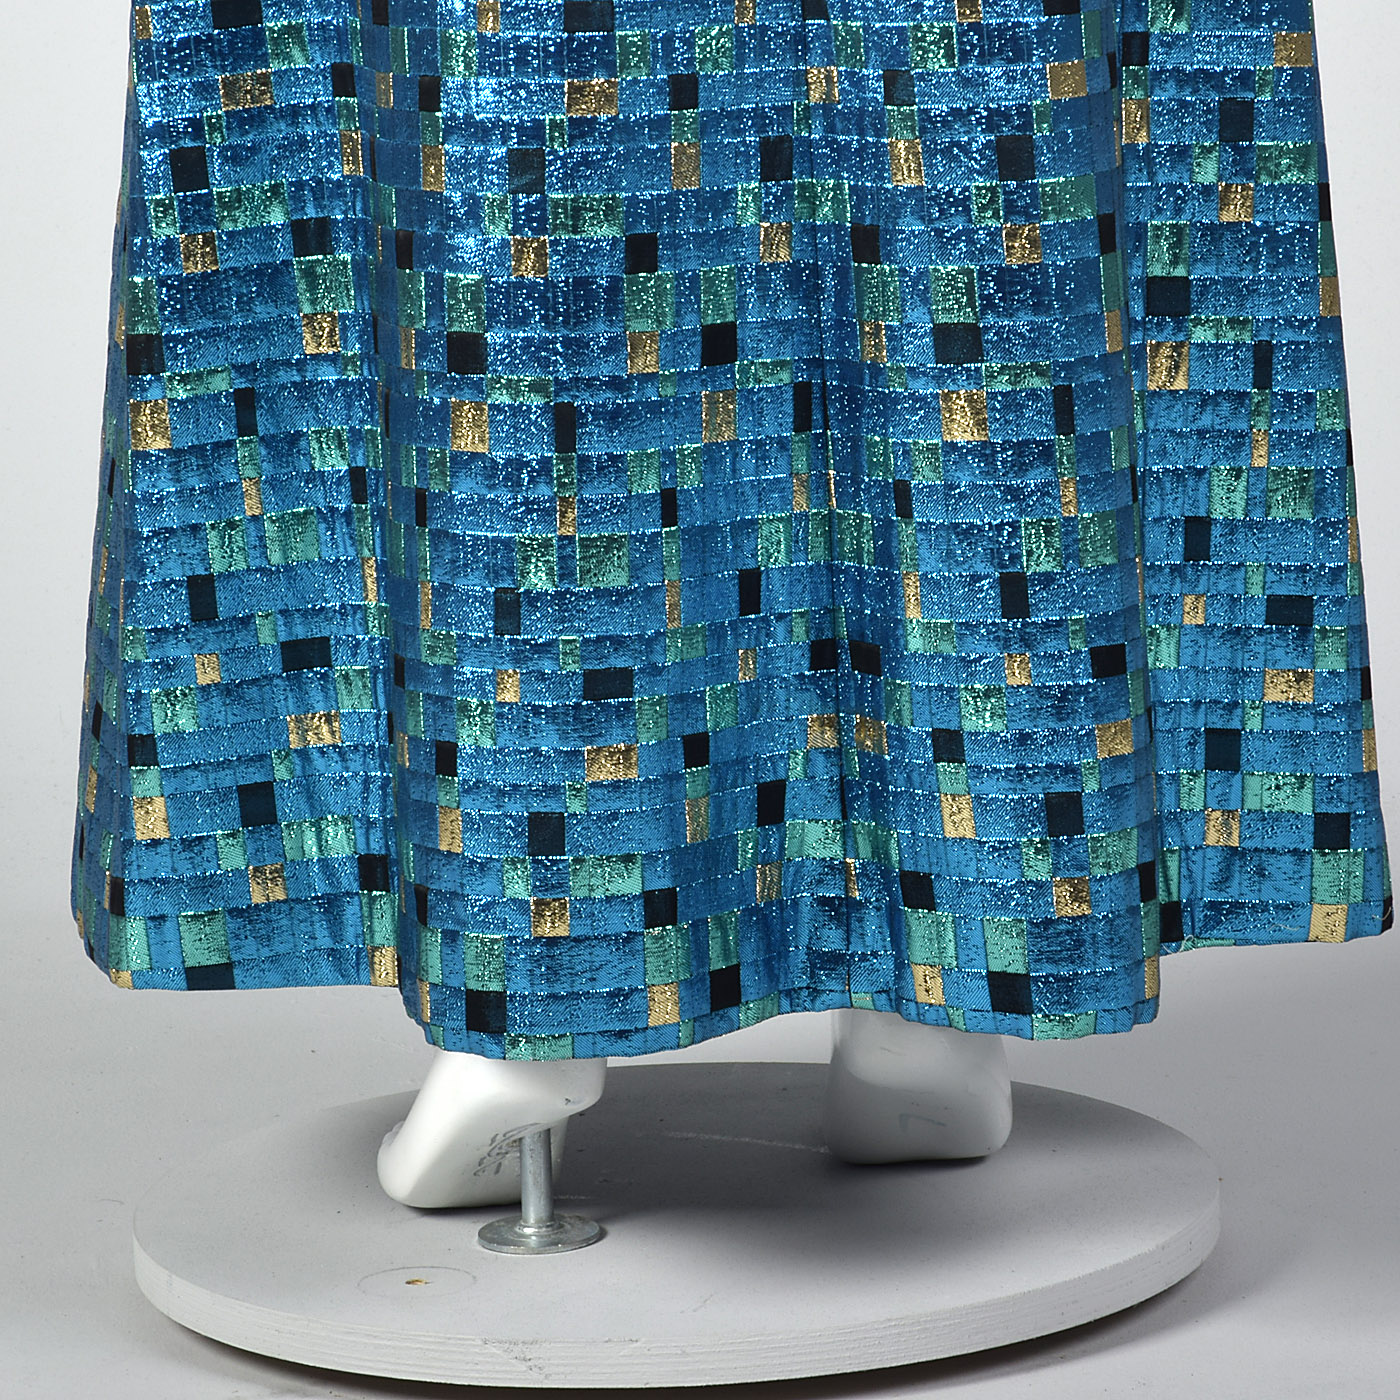 XL 1970s Metallic Blue Maxi Skirt